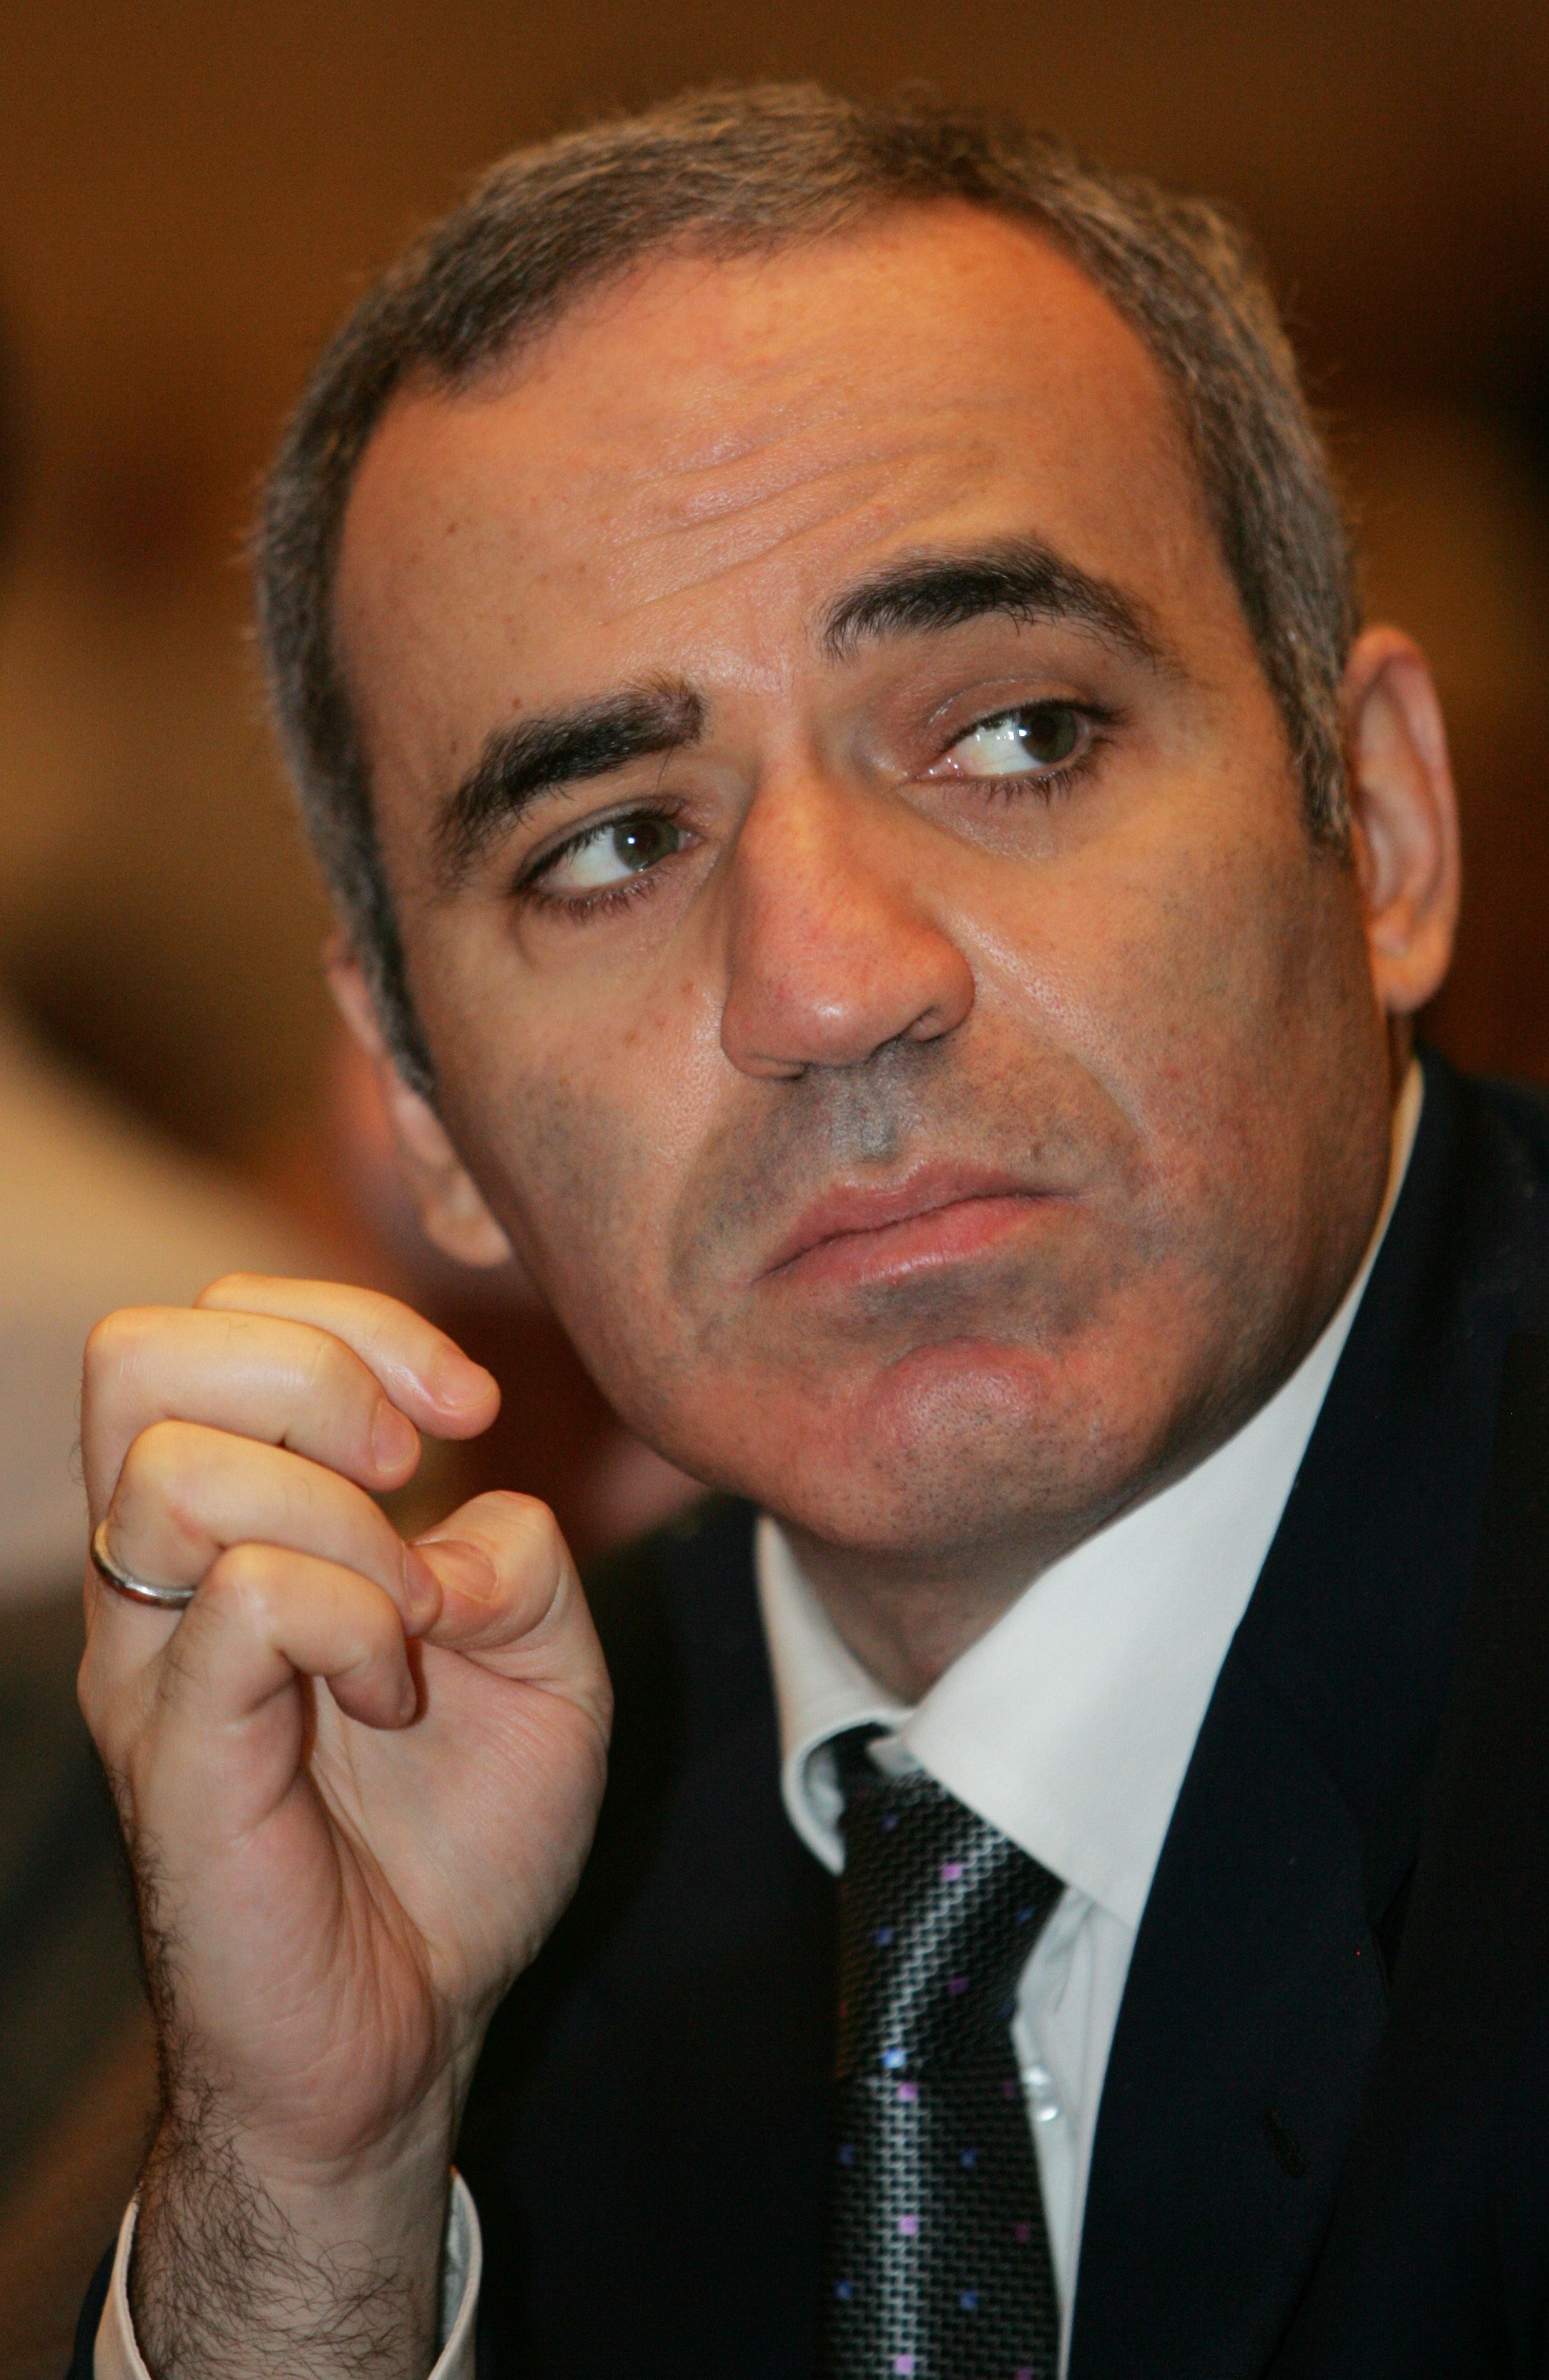 Kasparov Sobre Kasparov Vol1 PDF, PDF, Campeonato Mundial de Xadrez